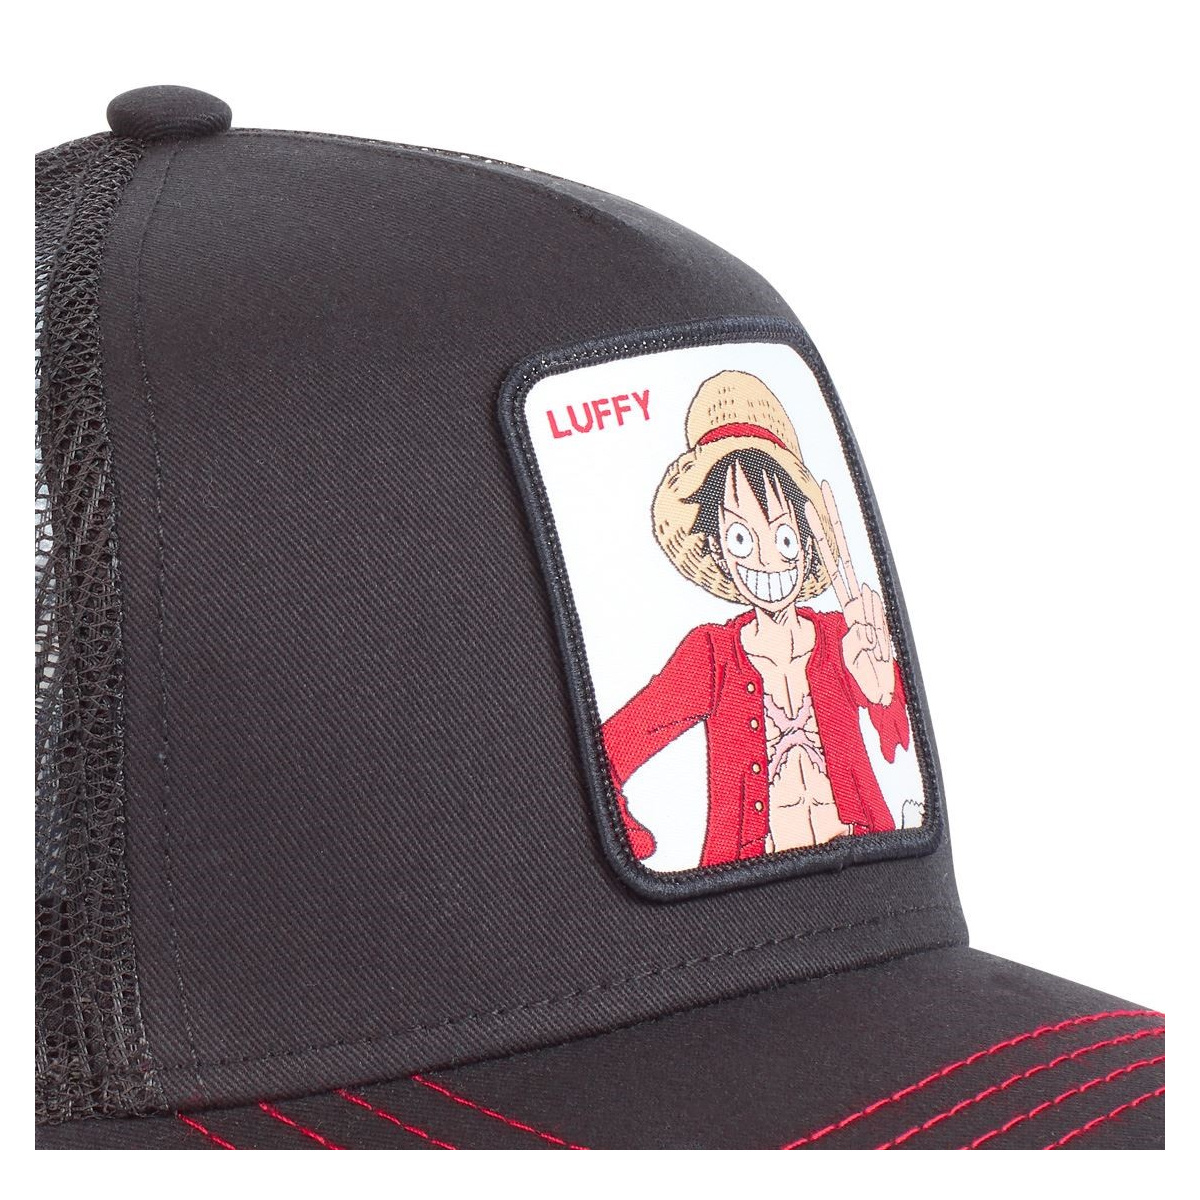 Arborez le chapeau de paille de Luffy pour la sortie de One Piece sur  Netflix !